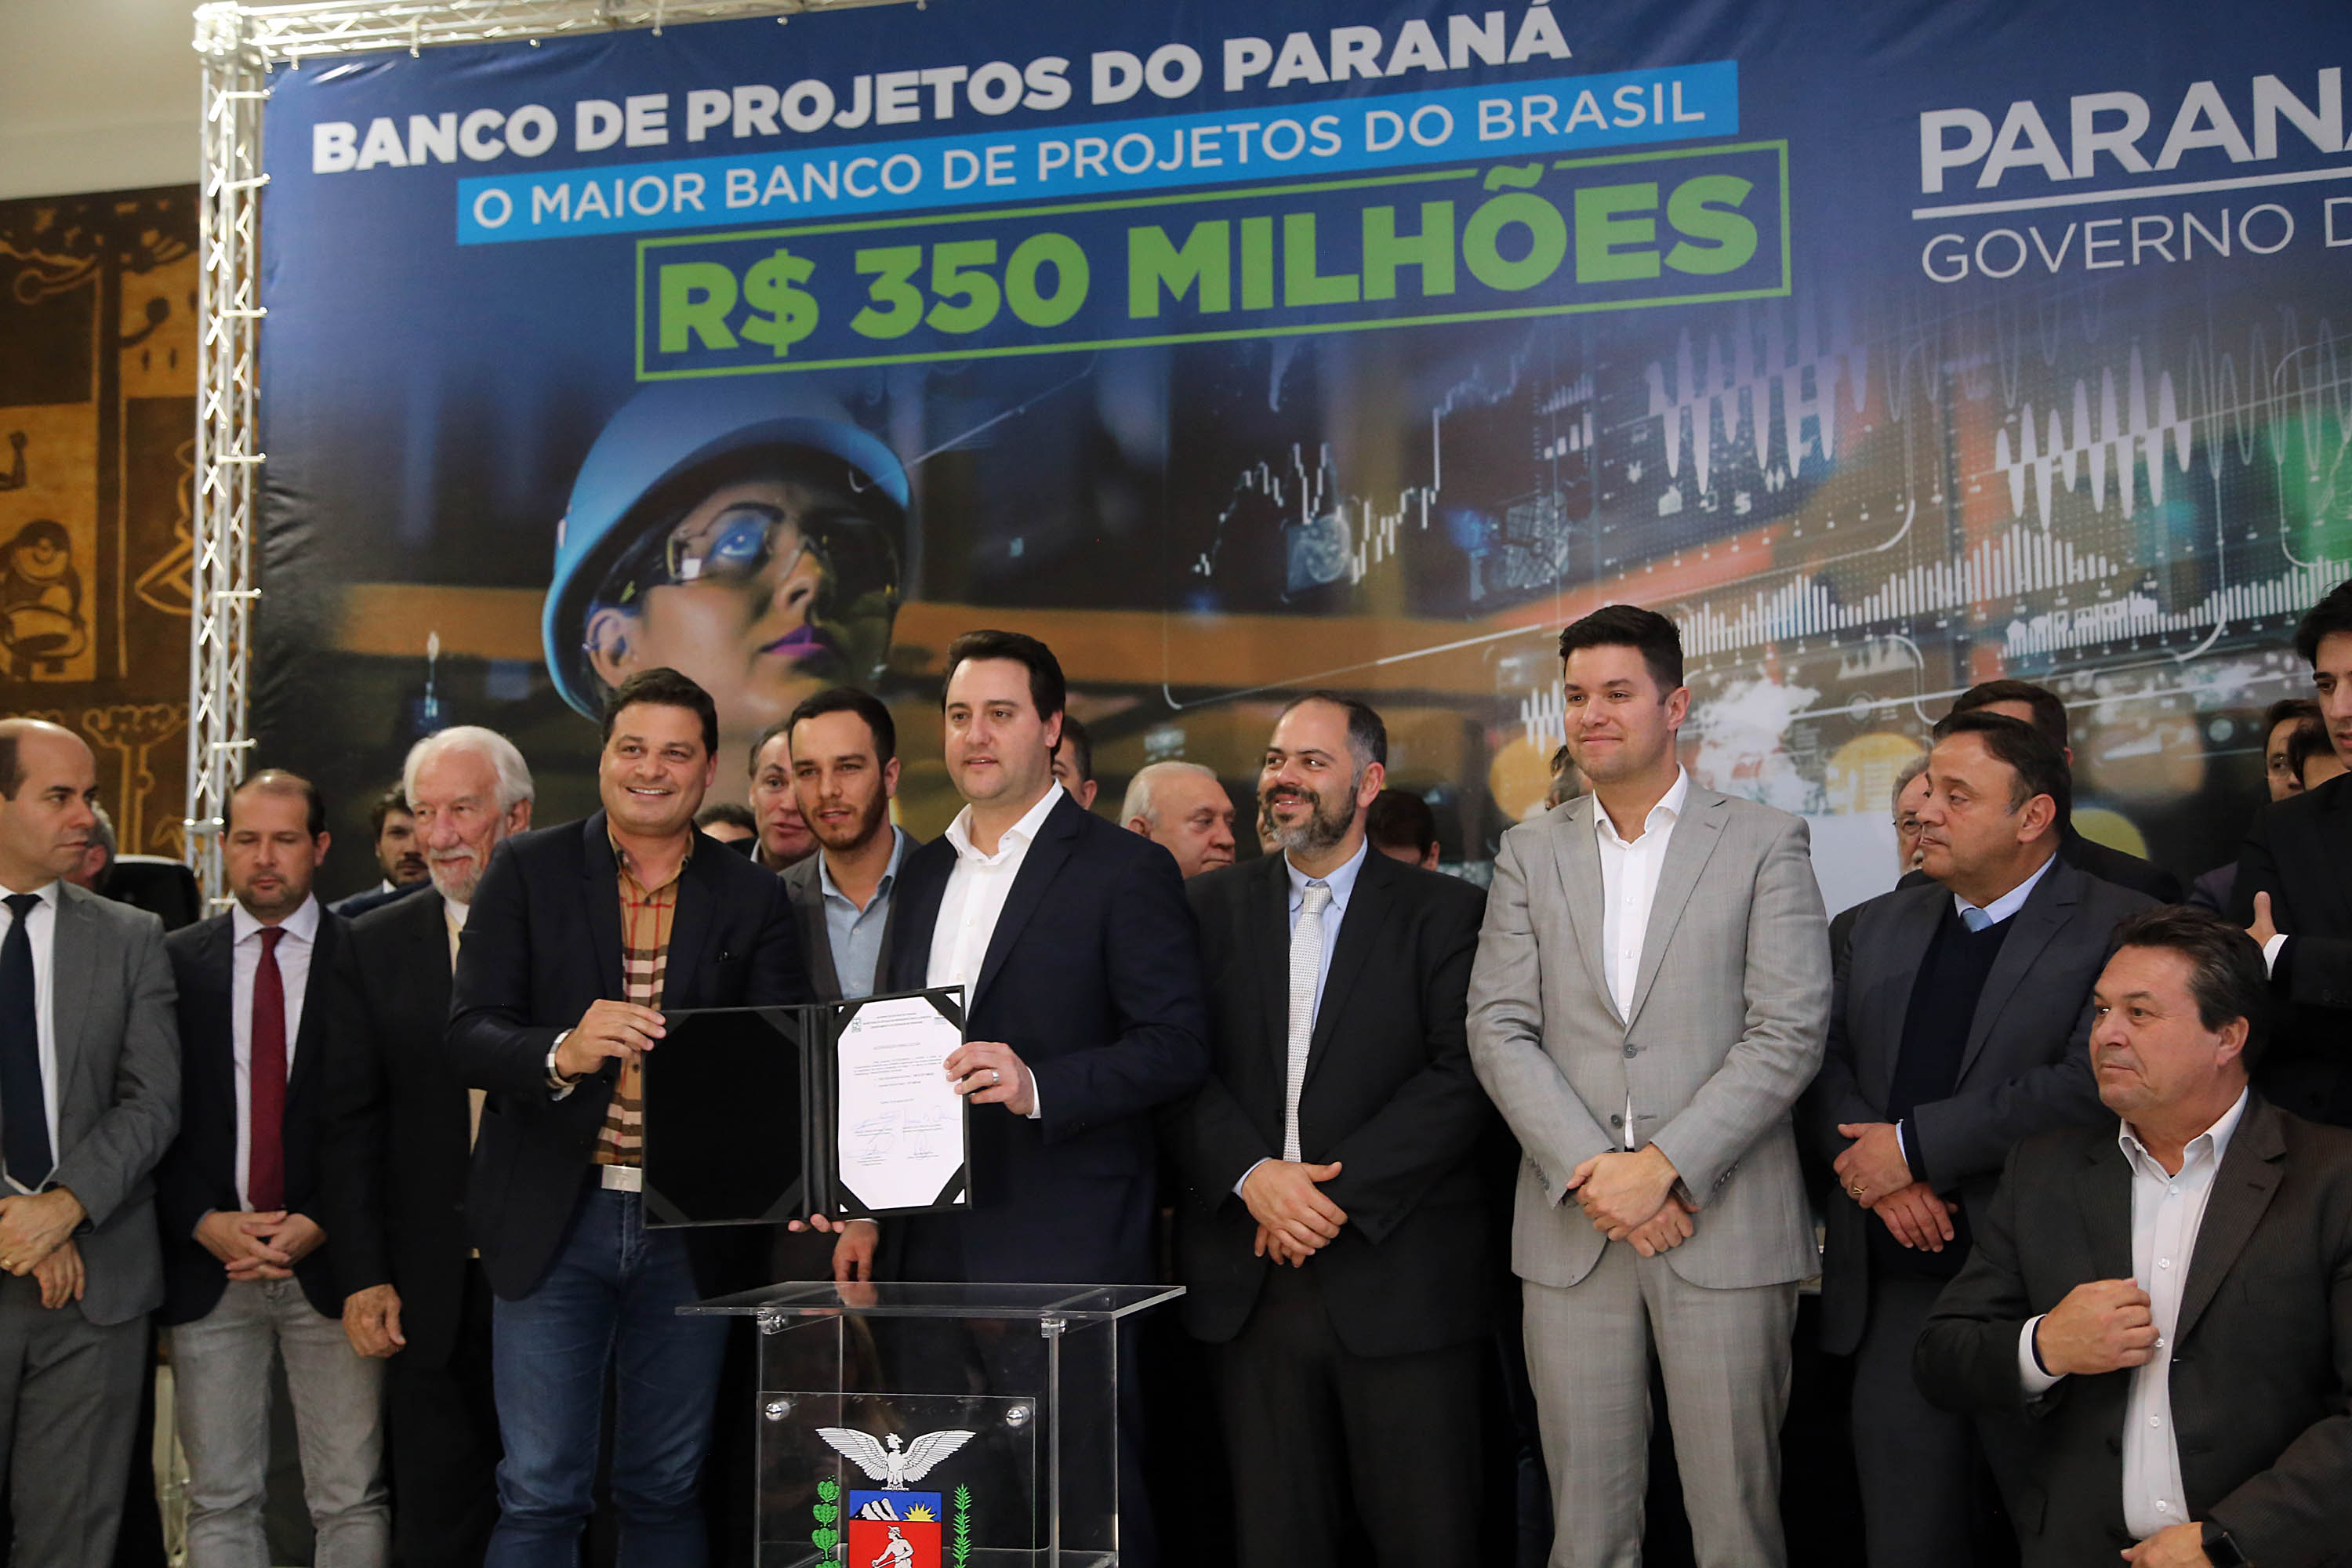 Paraná lança maior banco de projetos executivos de sua história